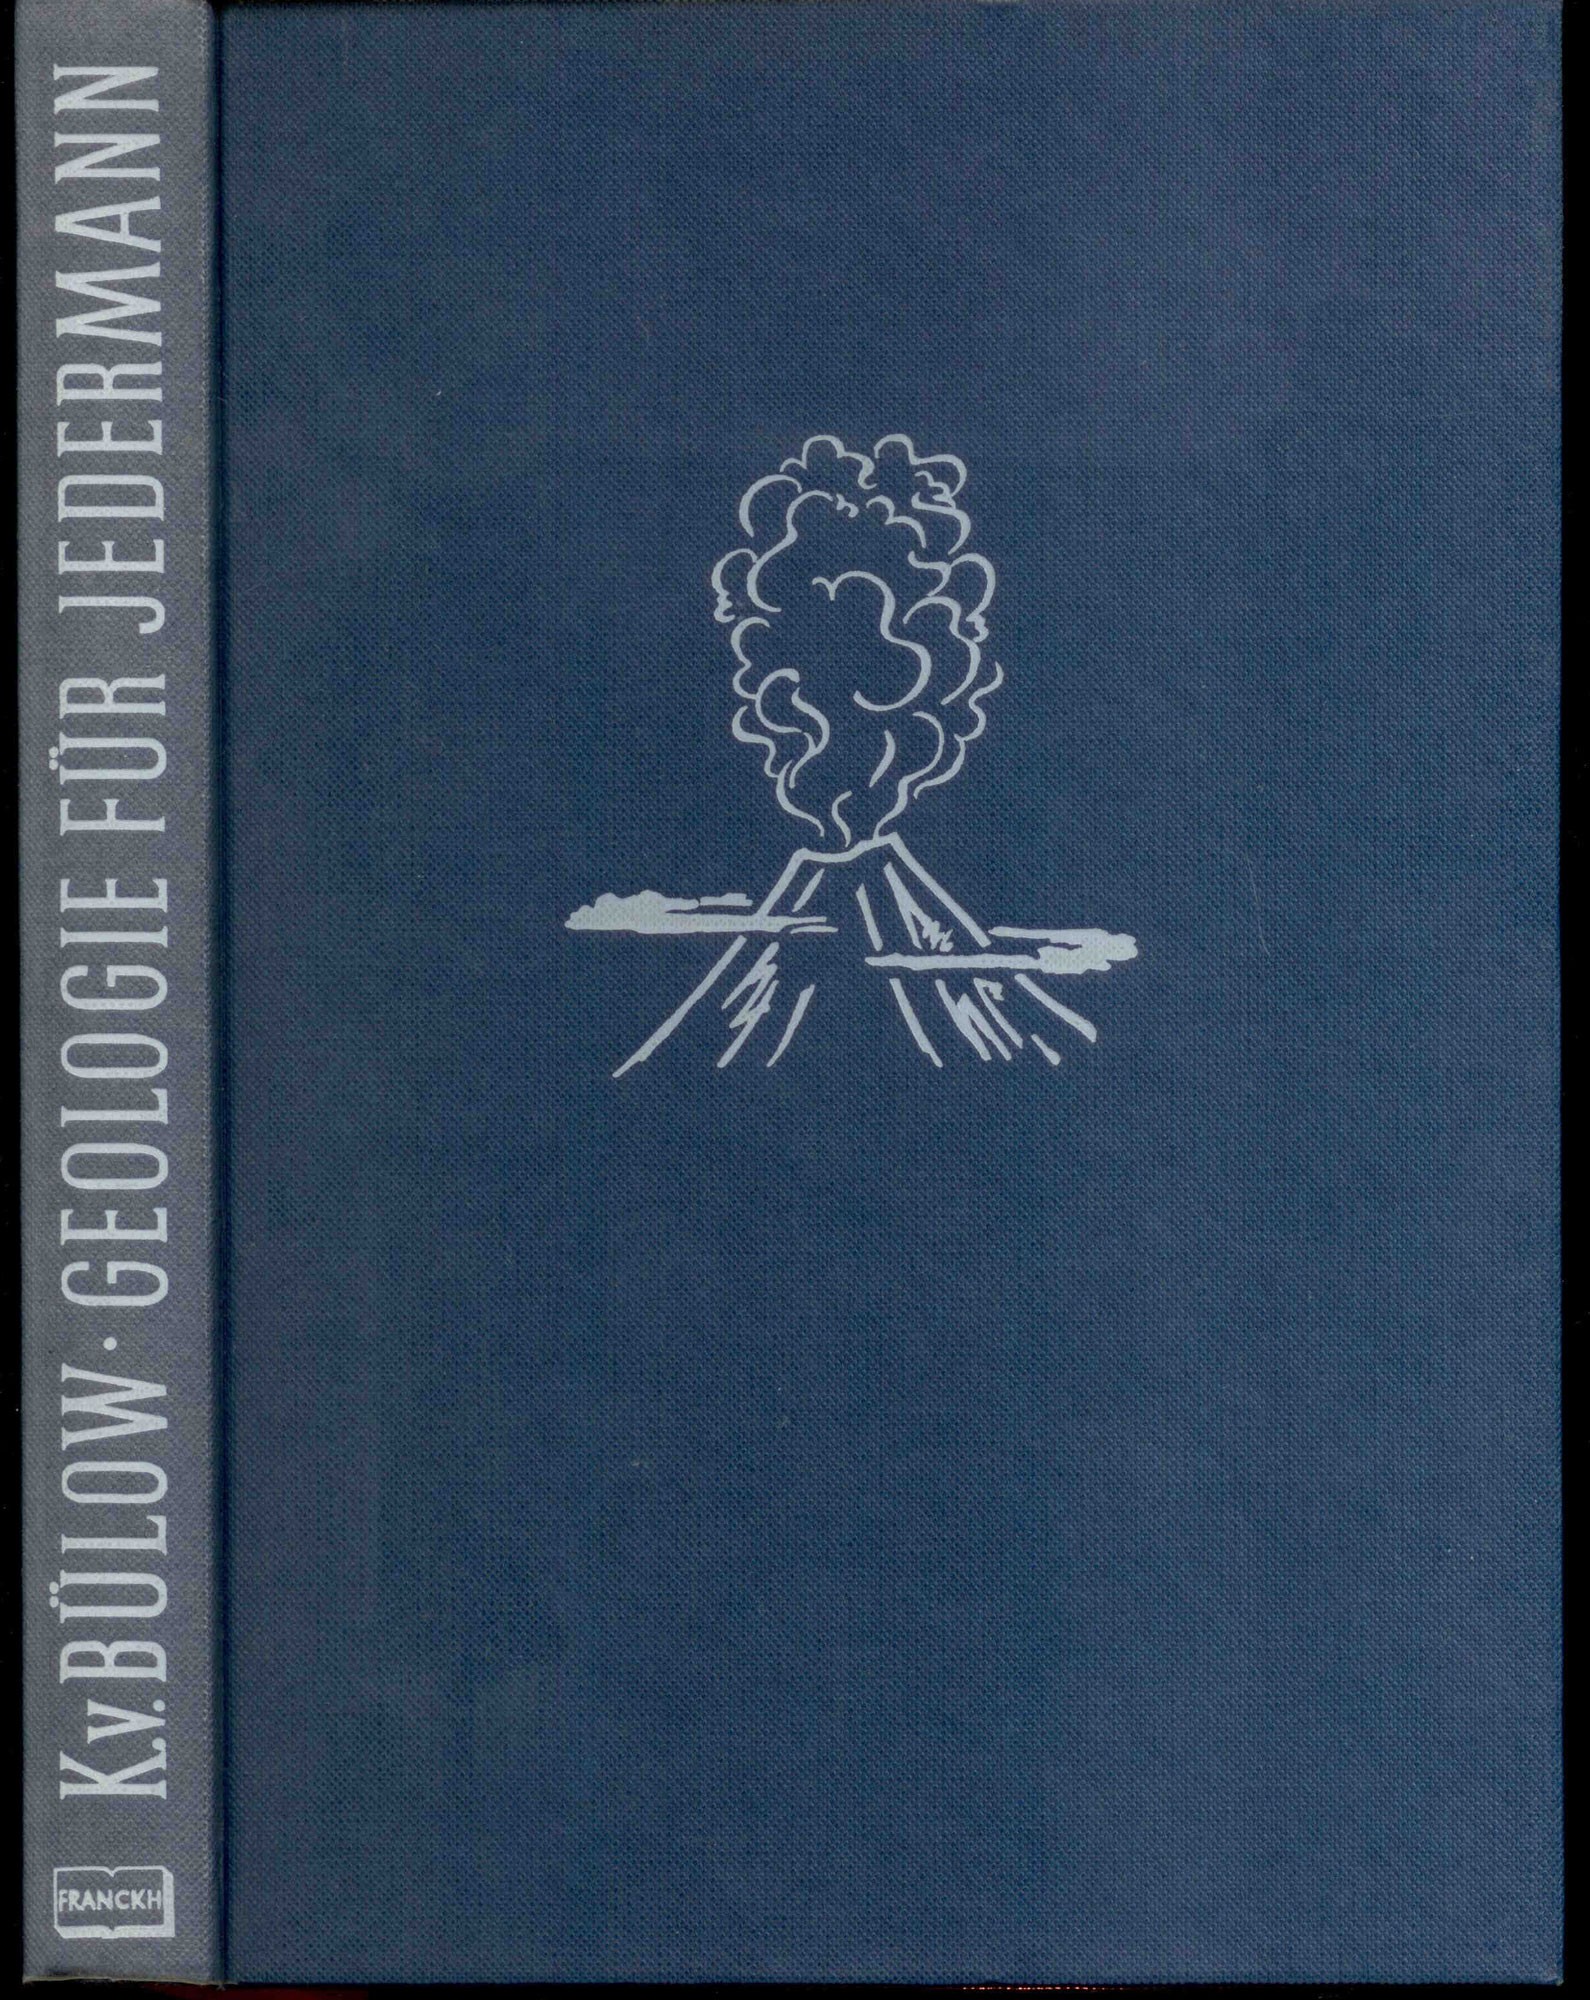 Bülow, K. v.: Geologie für Jedermann. Eine erste Einführung in geologisches Denken, Arbeiten und Wissen